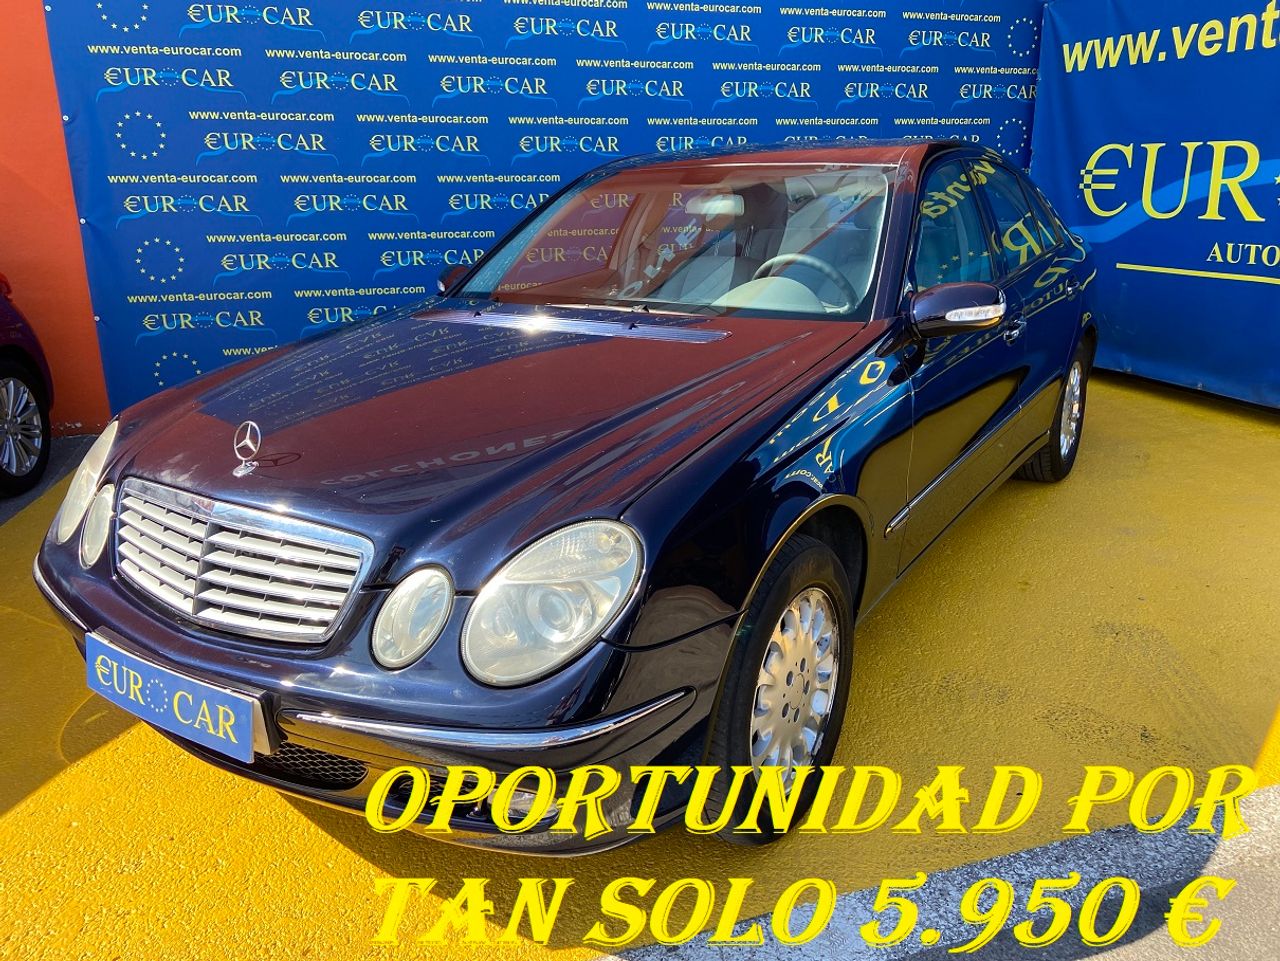 Mercedes Benz Clase E ocasión segunda mano 2003 Diésel por 5.950€ en Alicante